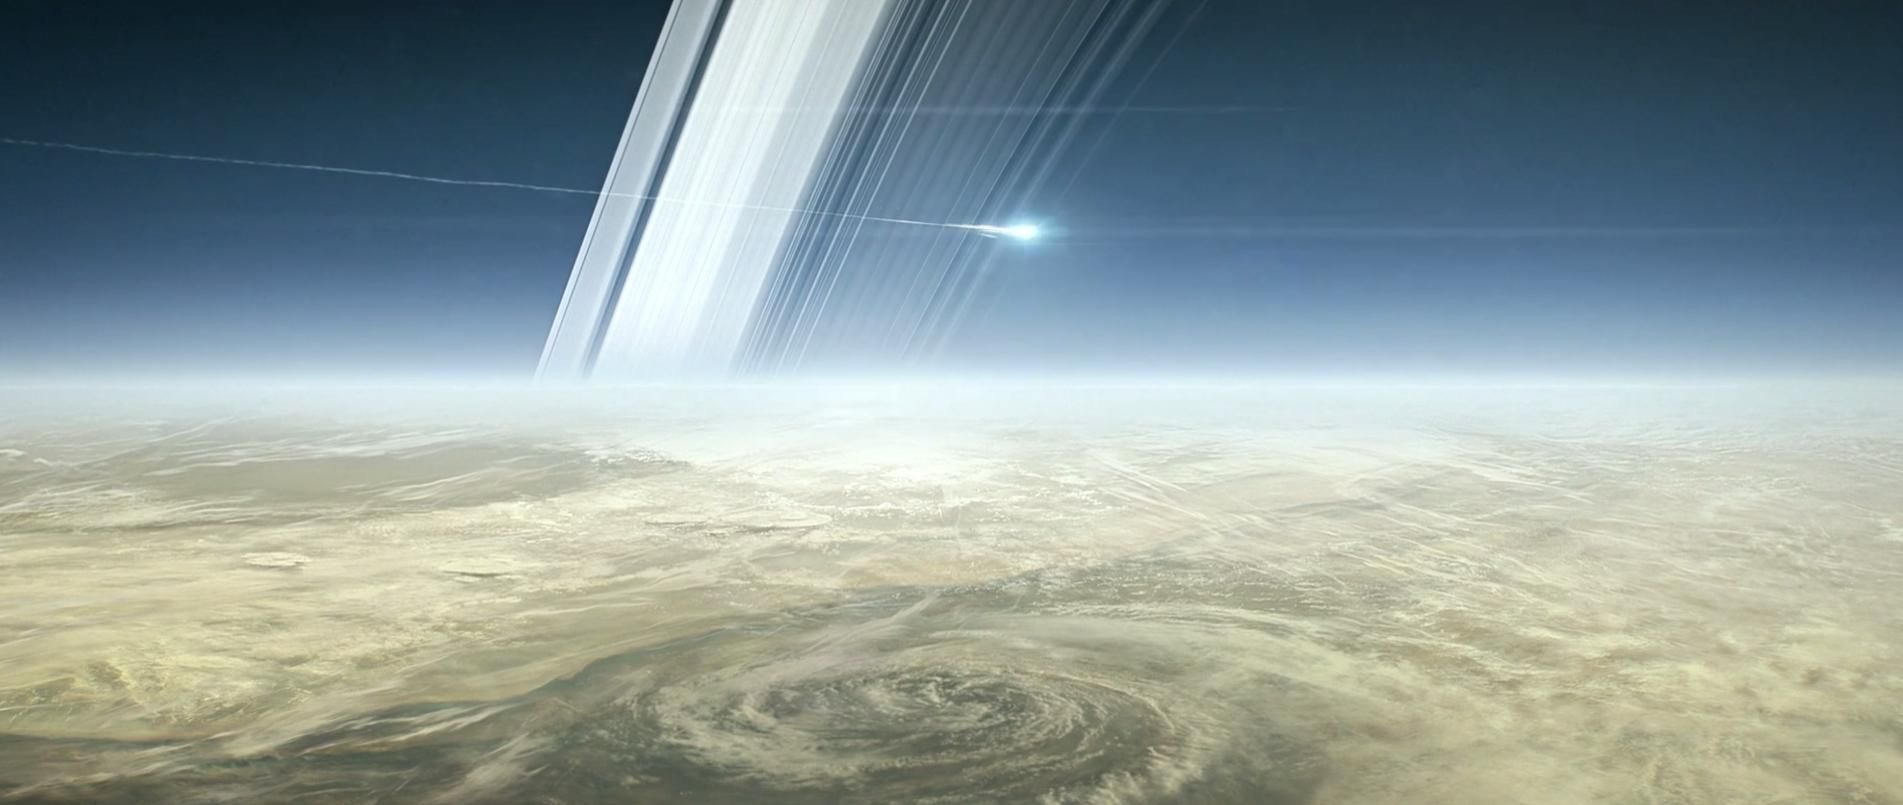 NASA опублікувало вражаючі кадри з космічної місії на Сатурні: відео 